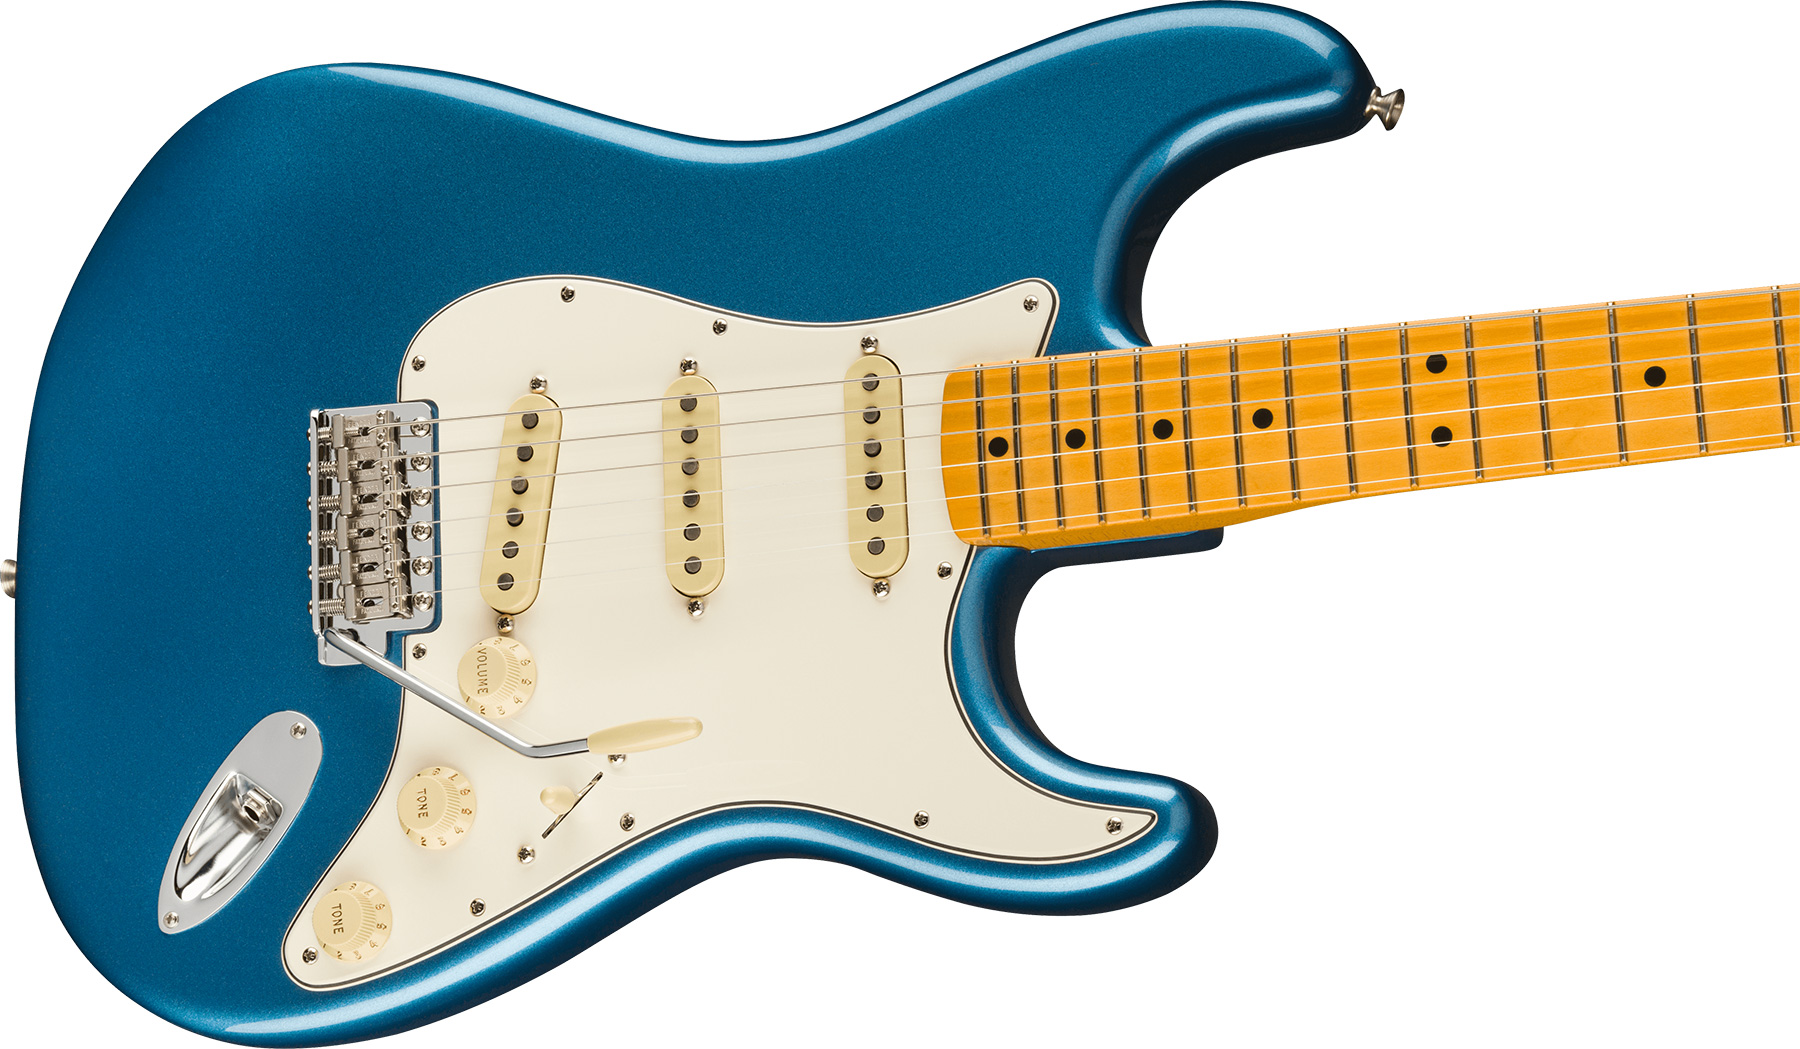 Fender Strat 1973 American Vintage Ii Usa 3s Trem Mn - Lake Placid Blue - Guitare Électrique Forme Str - Variation 2